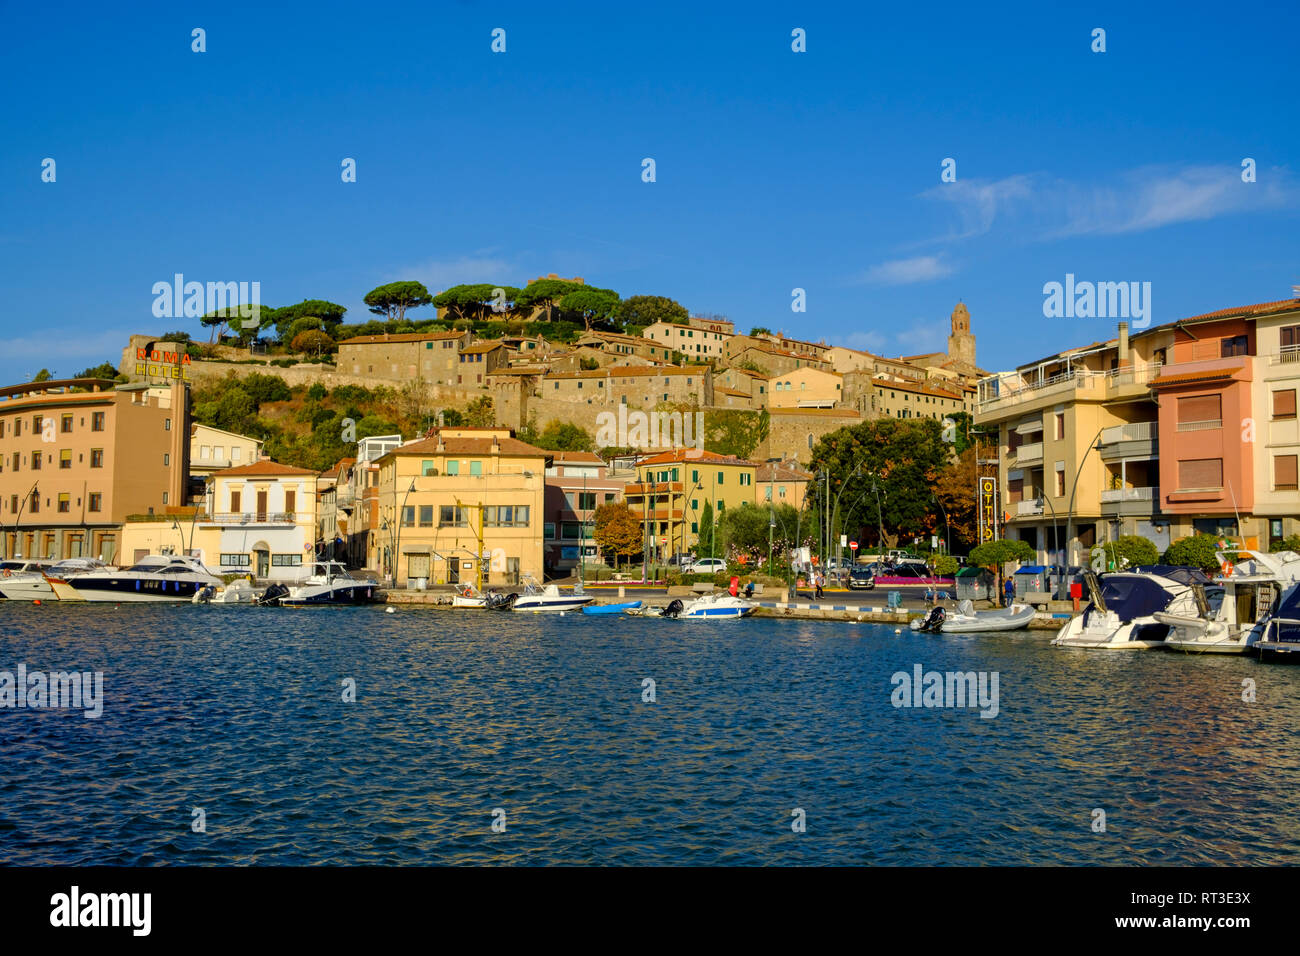 Italy, Tuscany, Castiglione della Pescaia, Old town and harbour Stock Photo